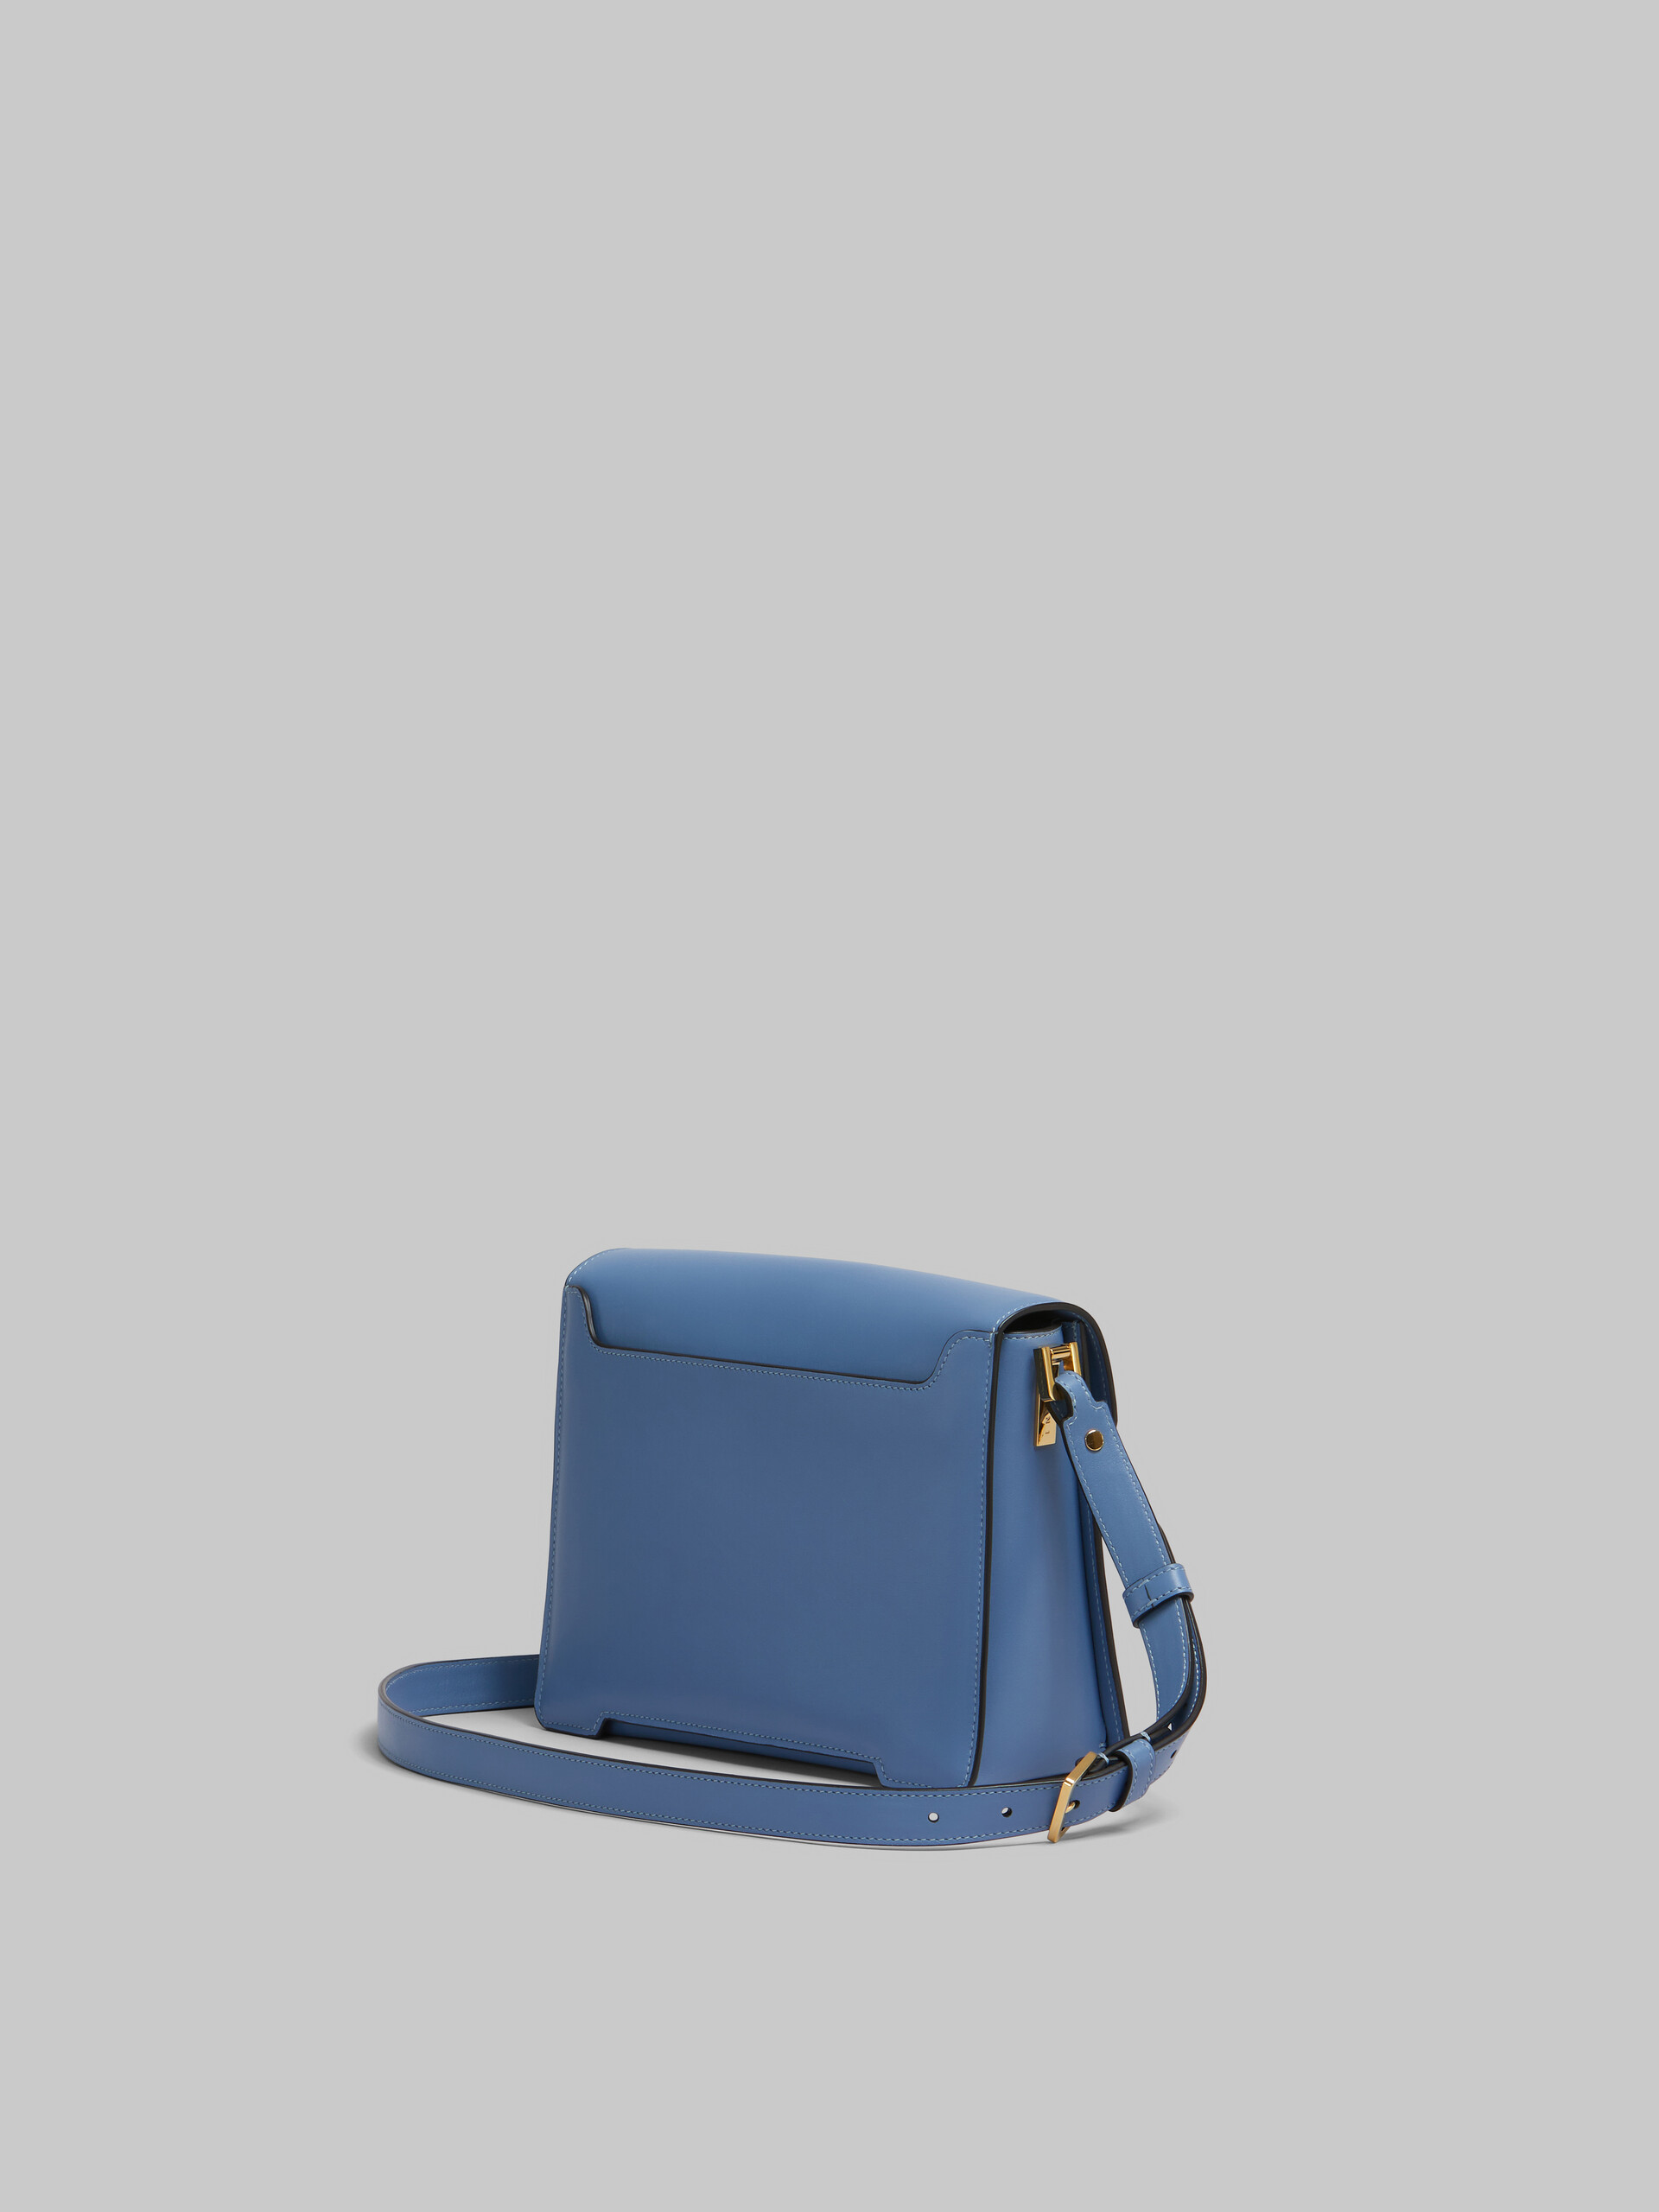 Blue leather Trunkaroo medium shoulder bag - Shoulder Bag - Image 3